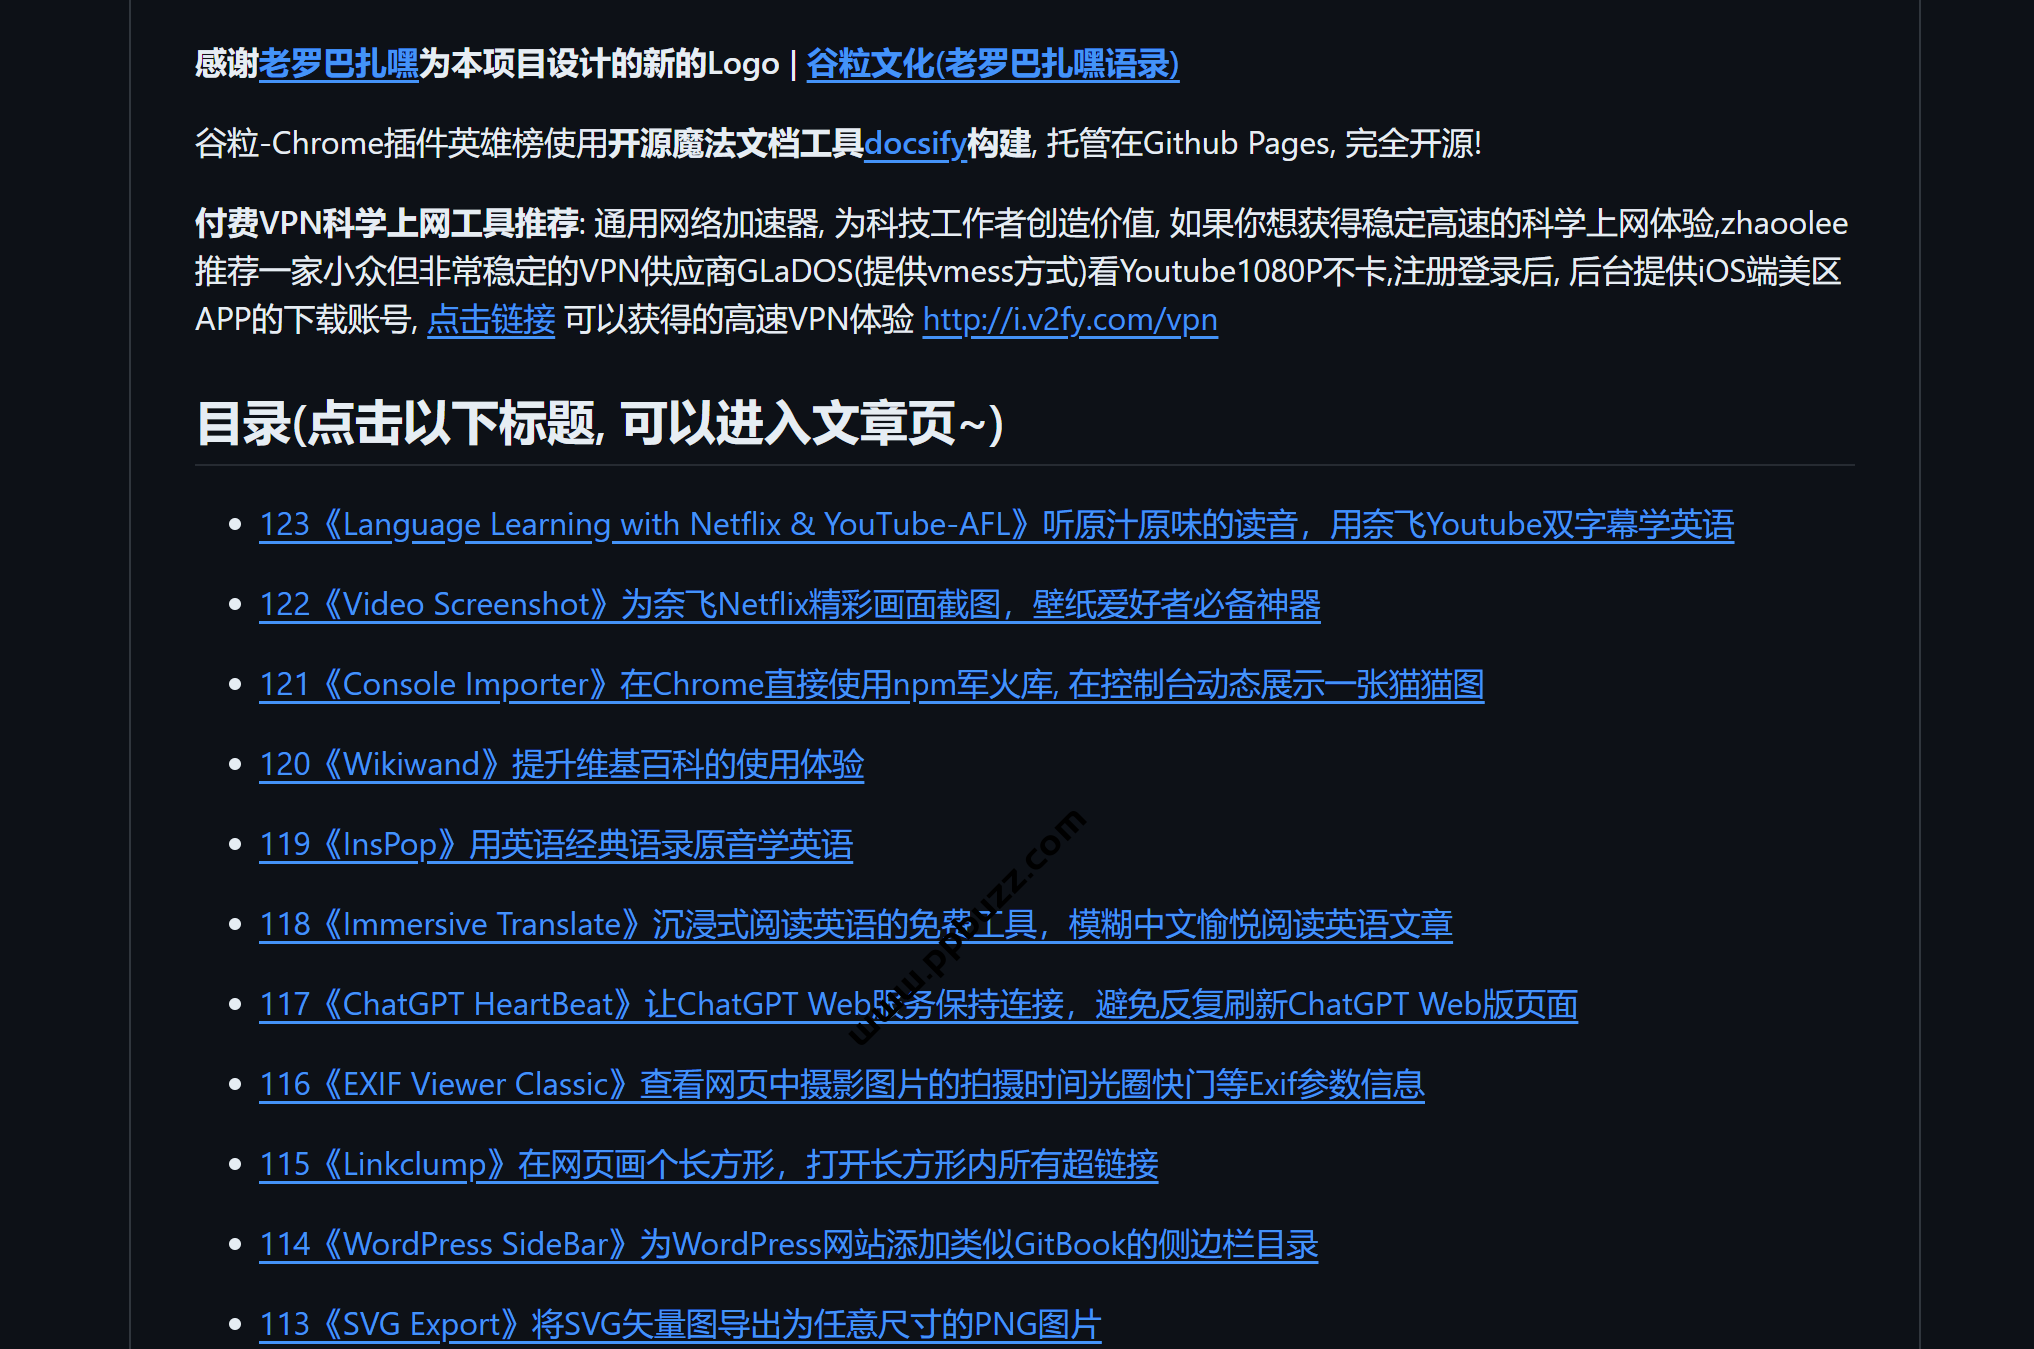 Chrome插件英雄榜, 为优秀的Chrome插件写一本中文说明书